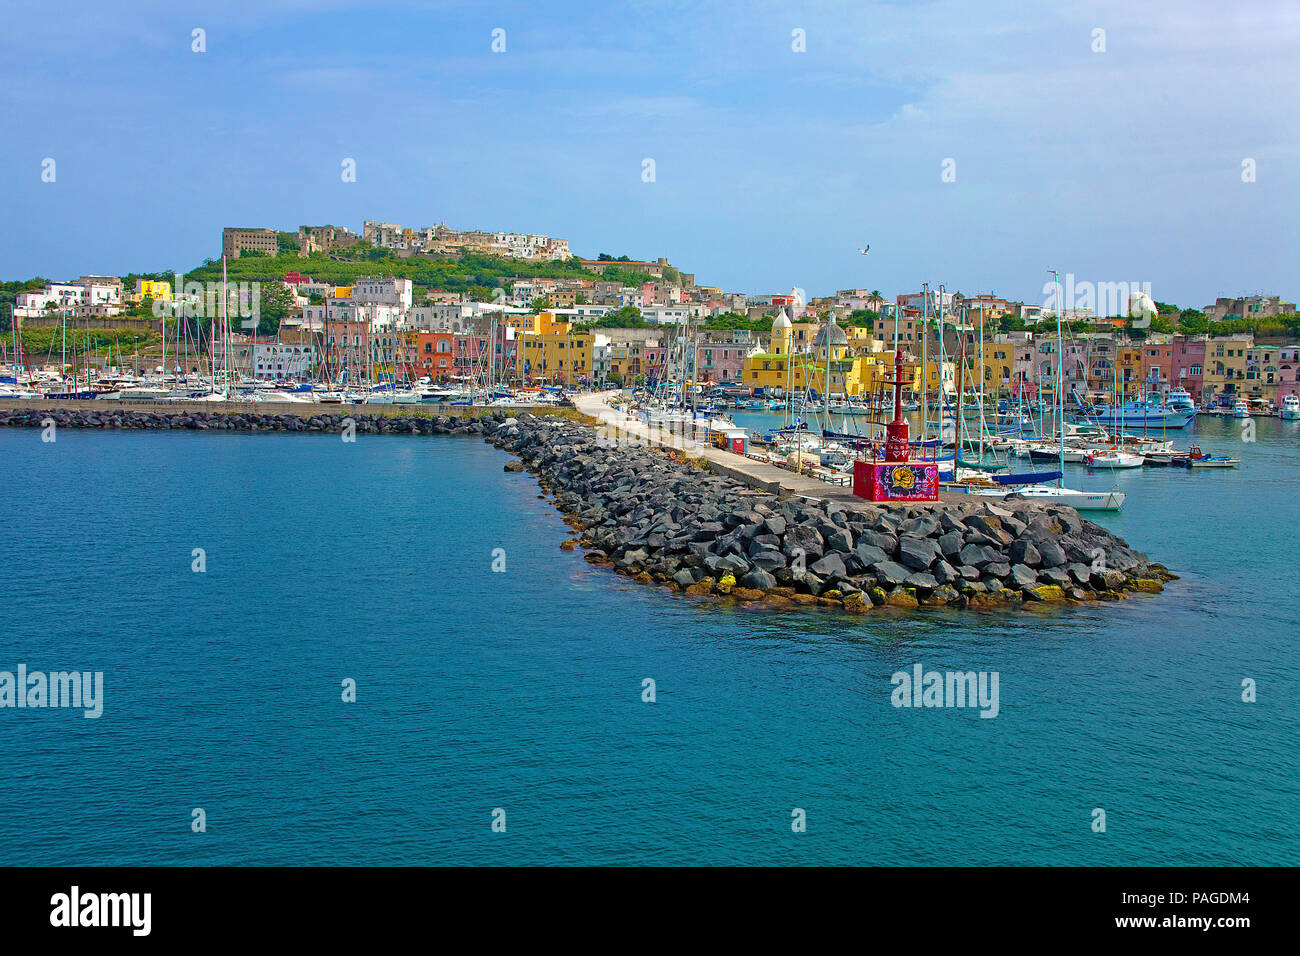 Boats at Marina Grande, above the fortress Terra Murata, Procida island, Gulf of Naples, Italy Stock Photo